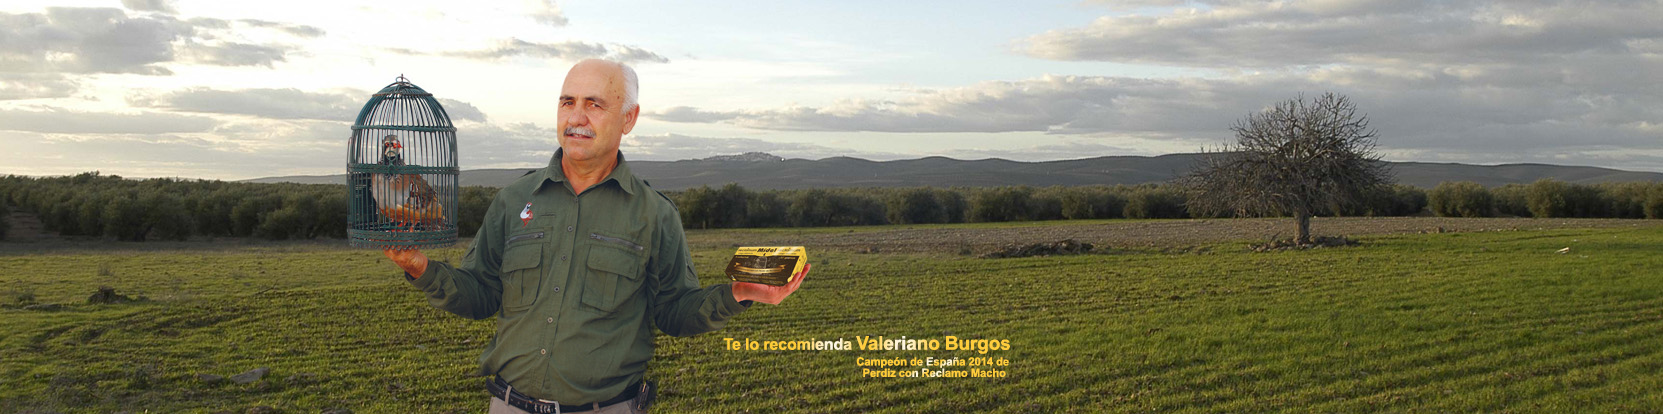 Valeriano Burgos - Mídel Reclamum